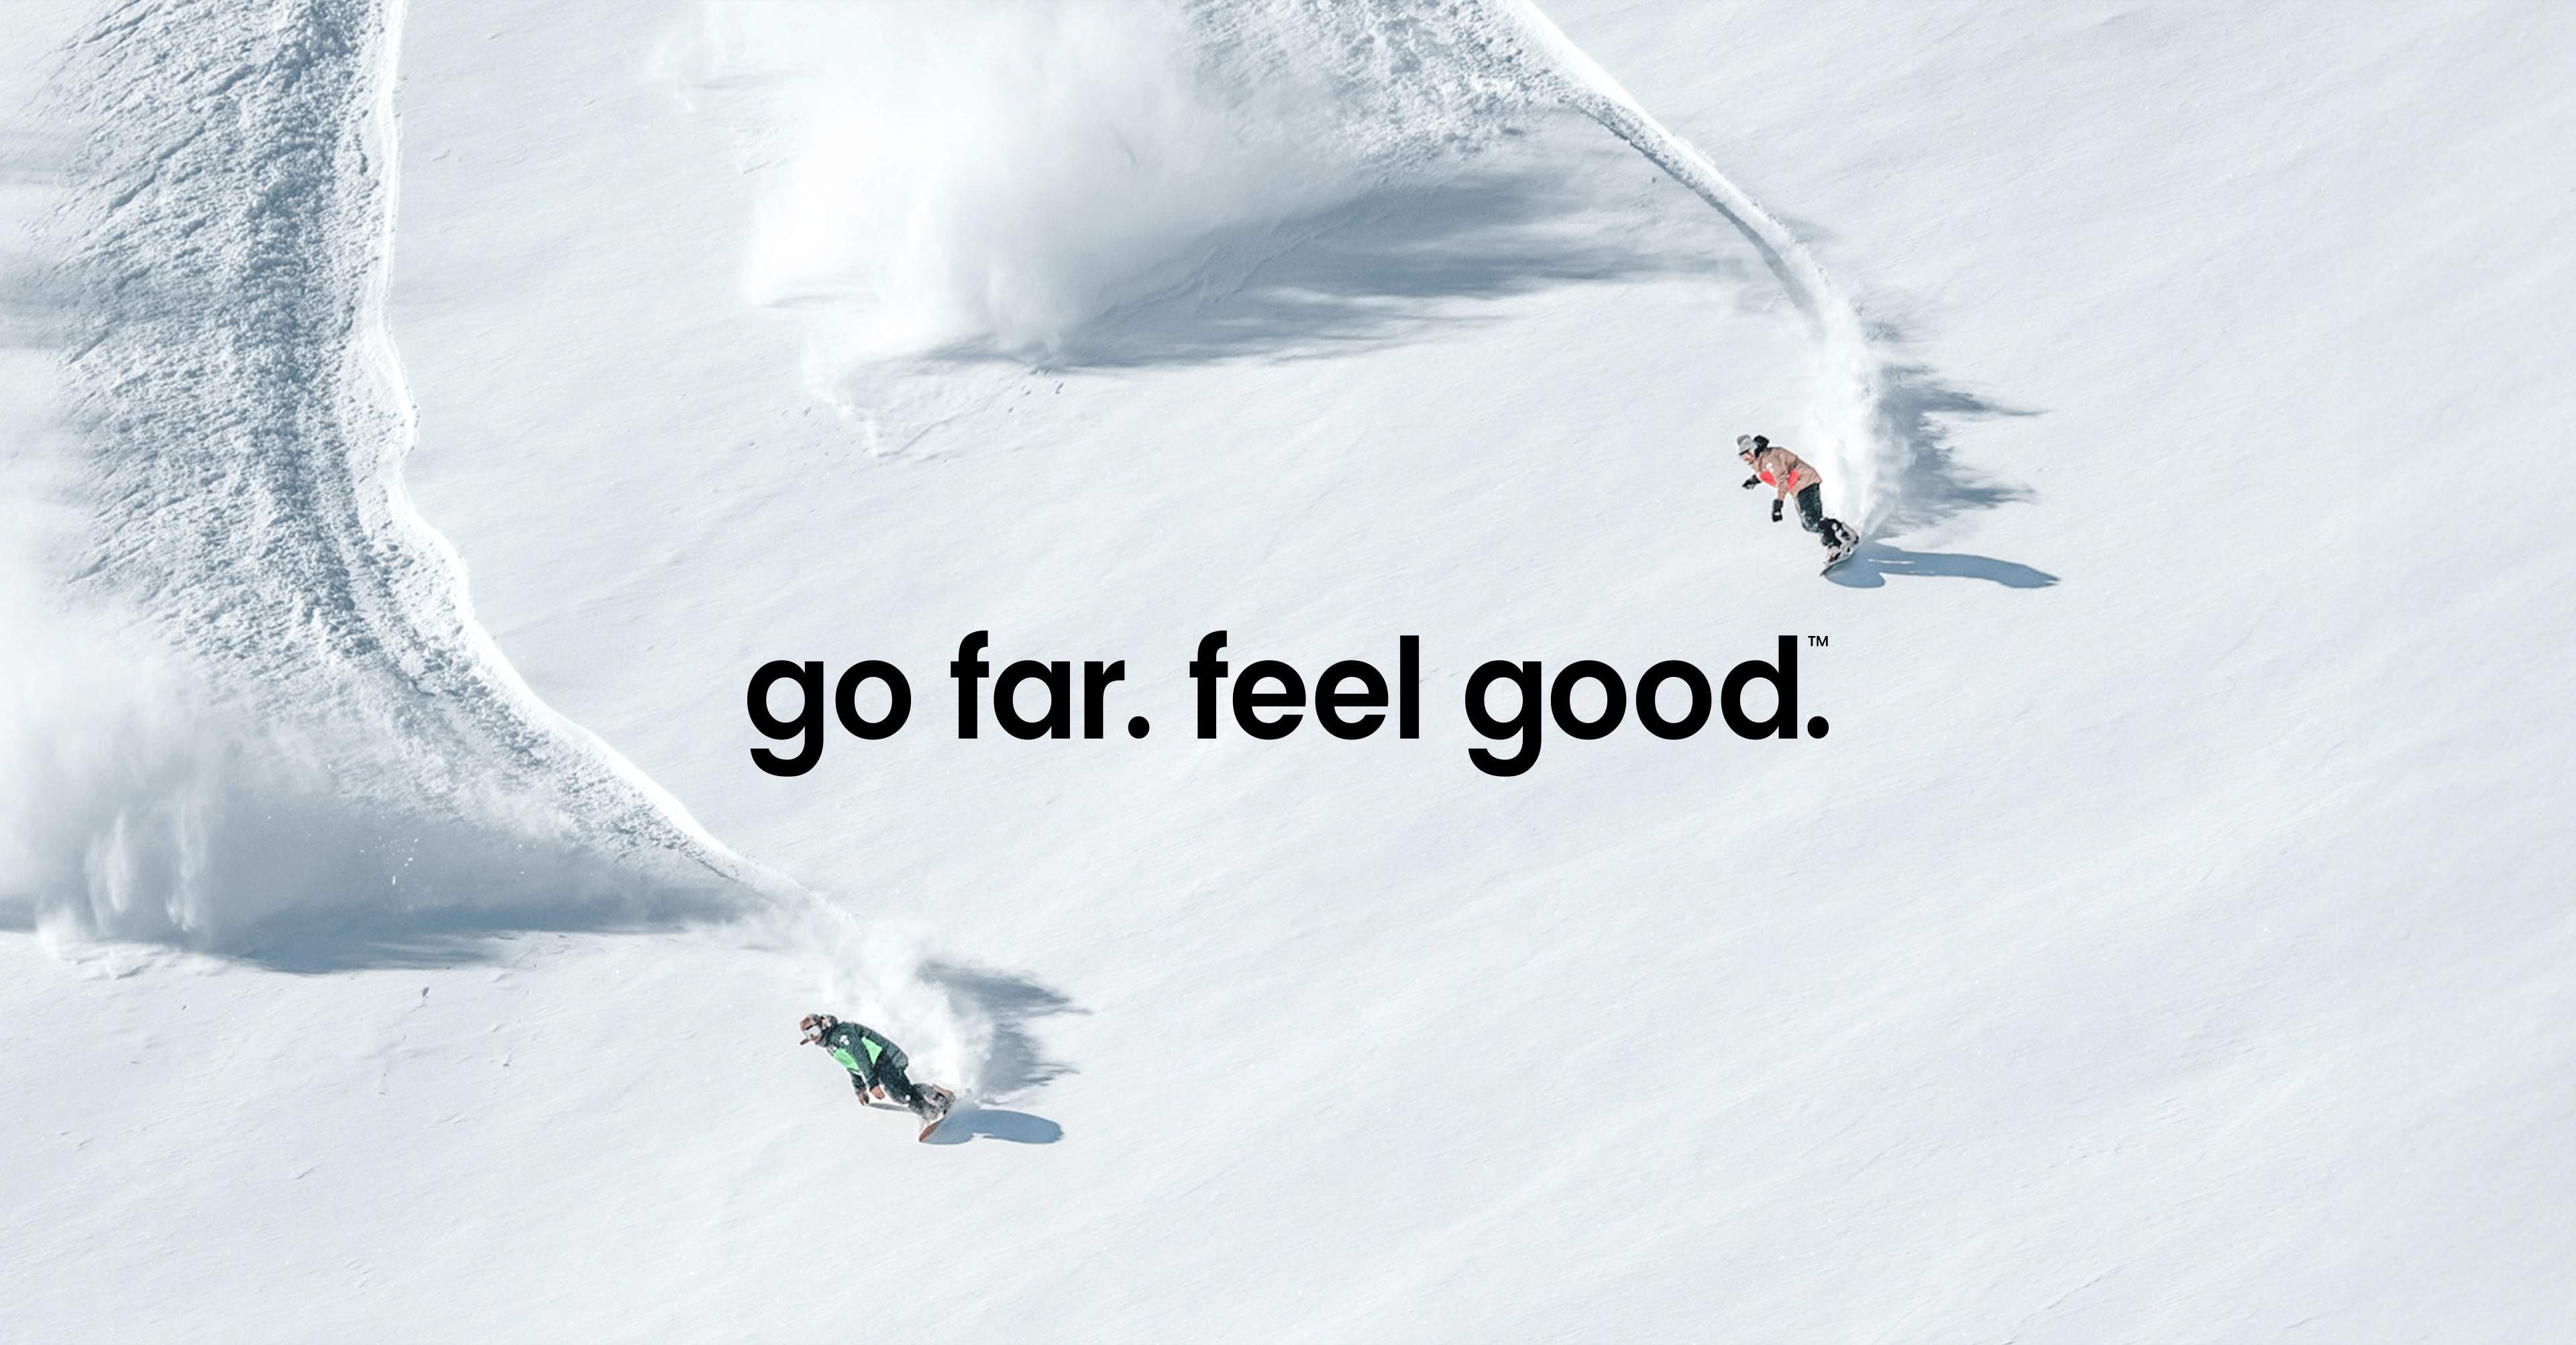 Go far feel good